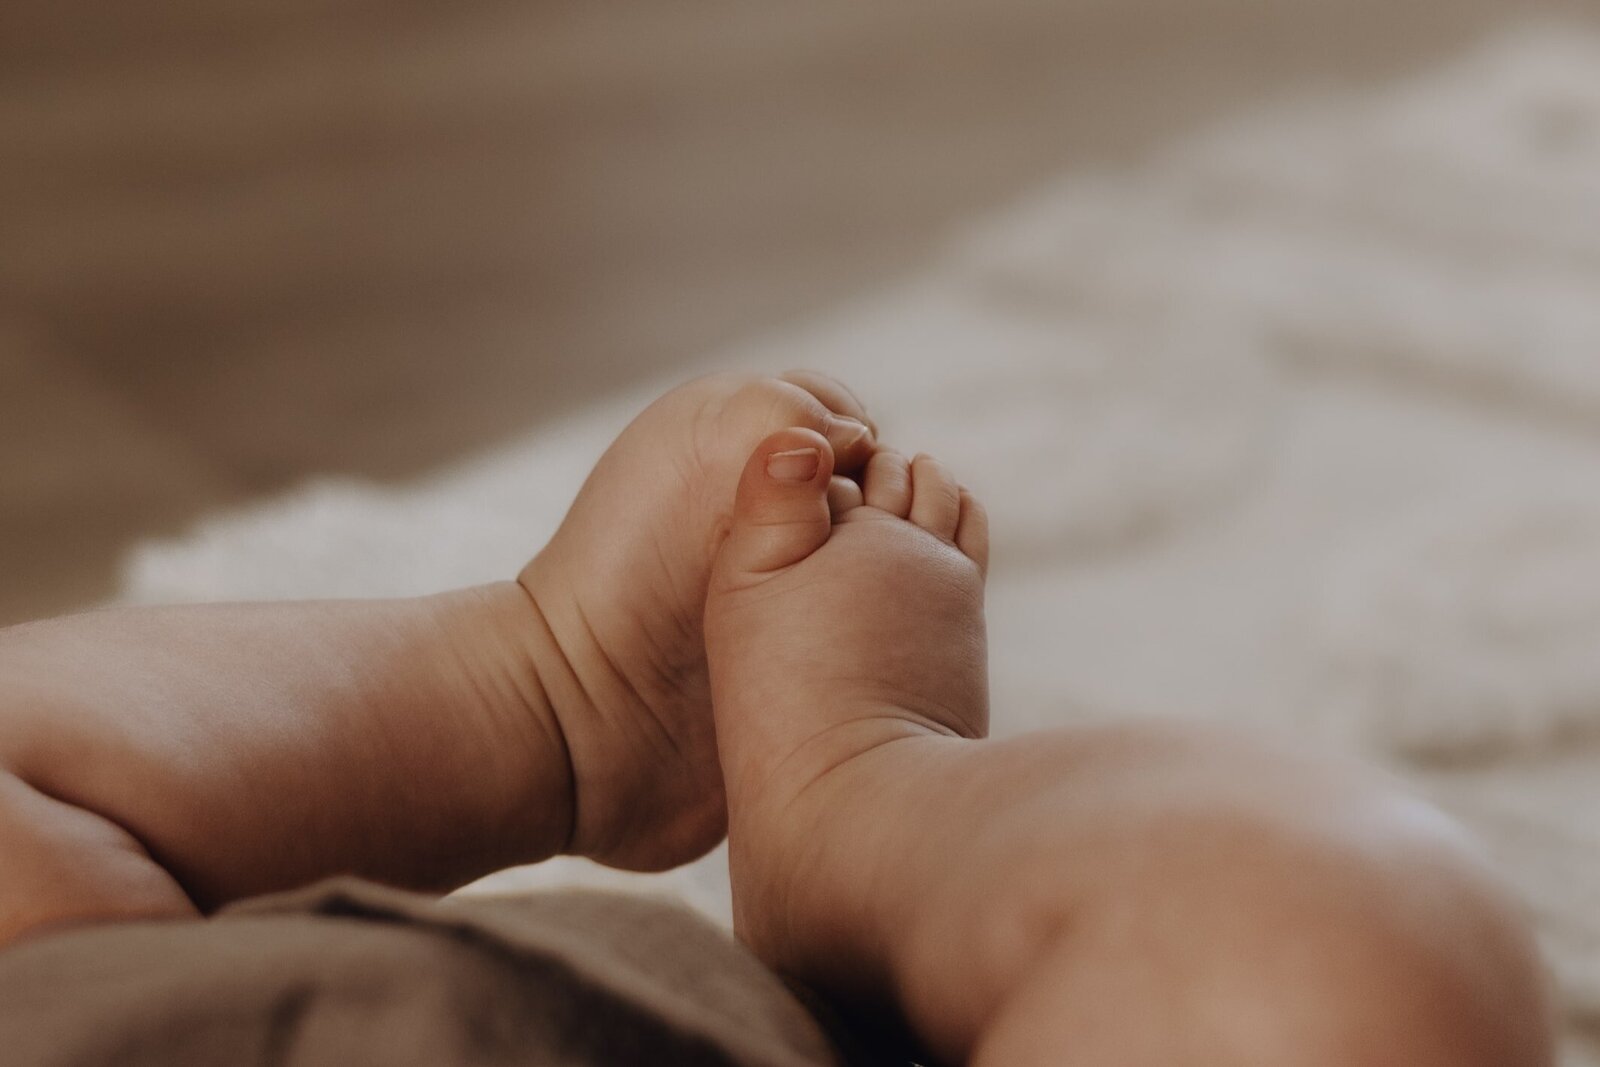 Füße von einem 1 jährigen Baby